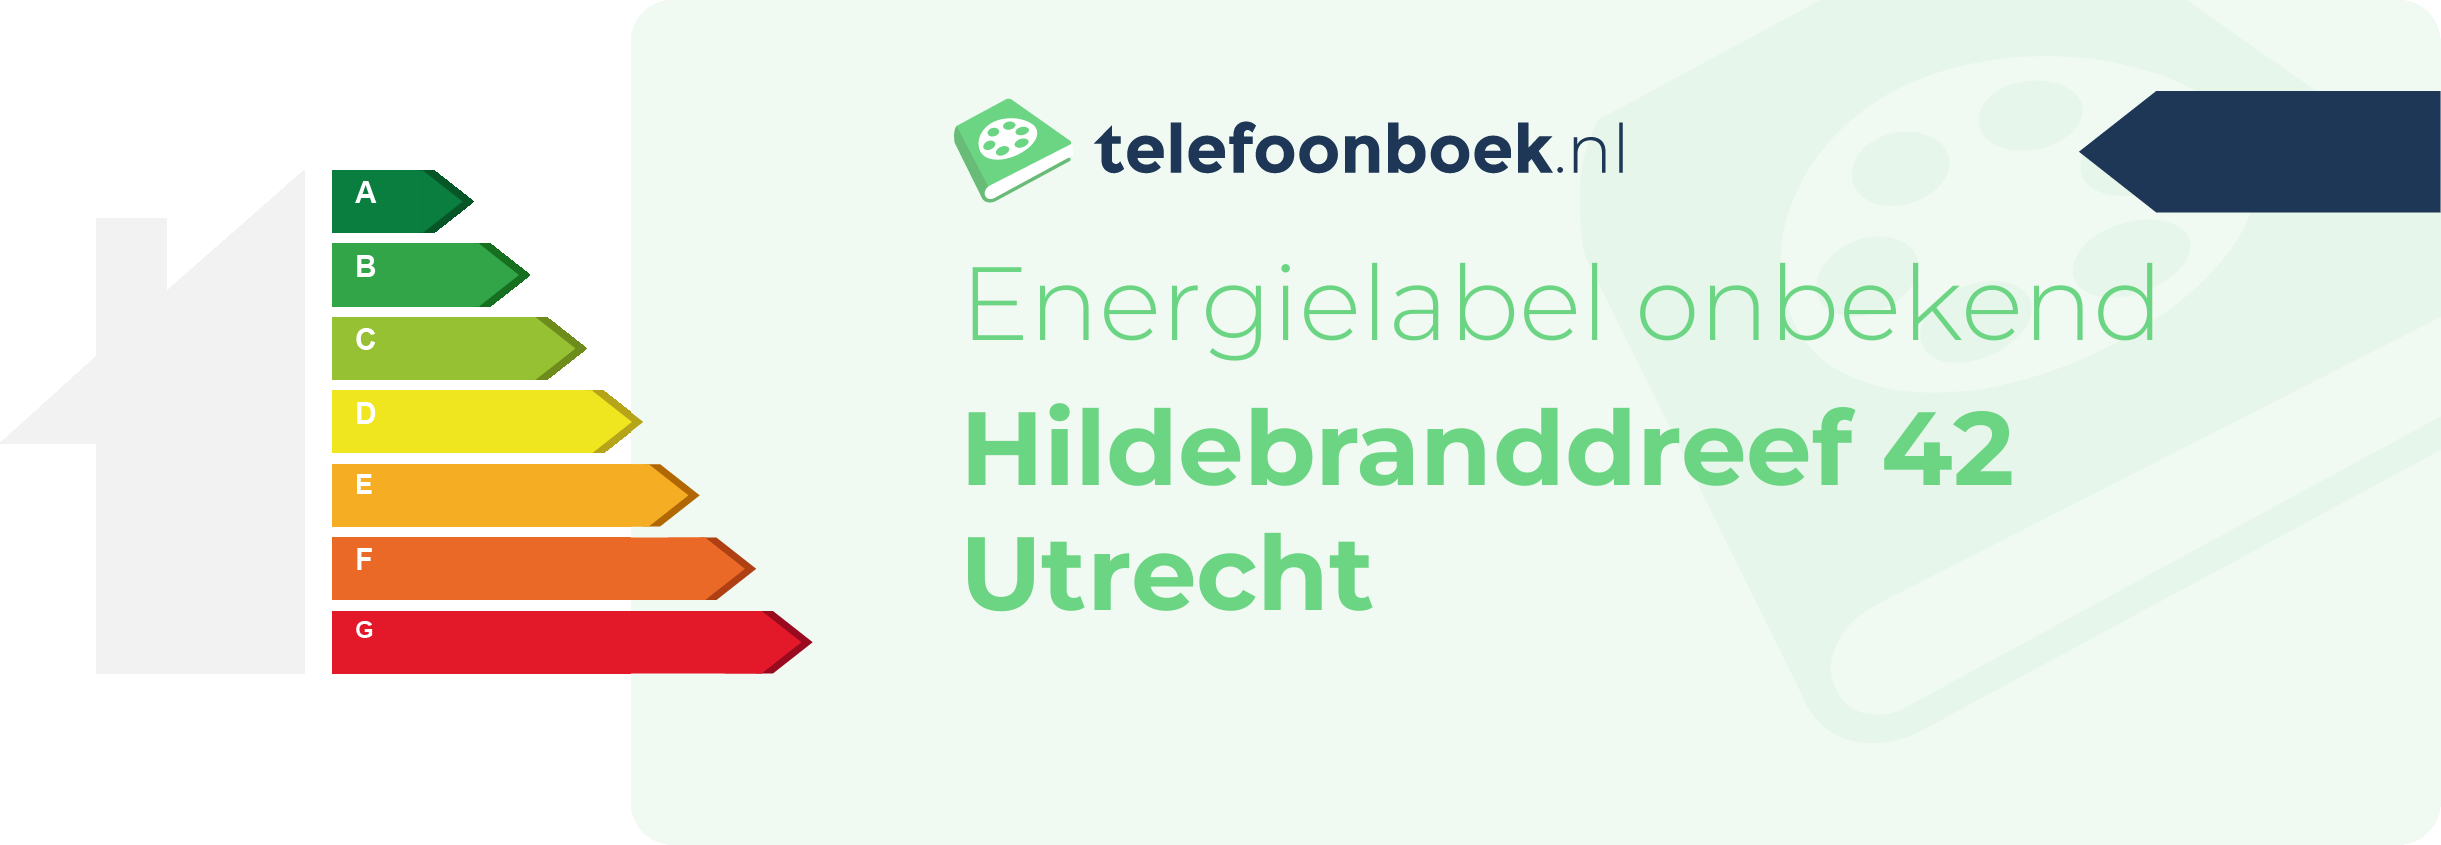 Energielabel Hildebranddreef 42 Utrecht